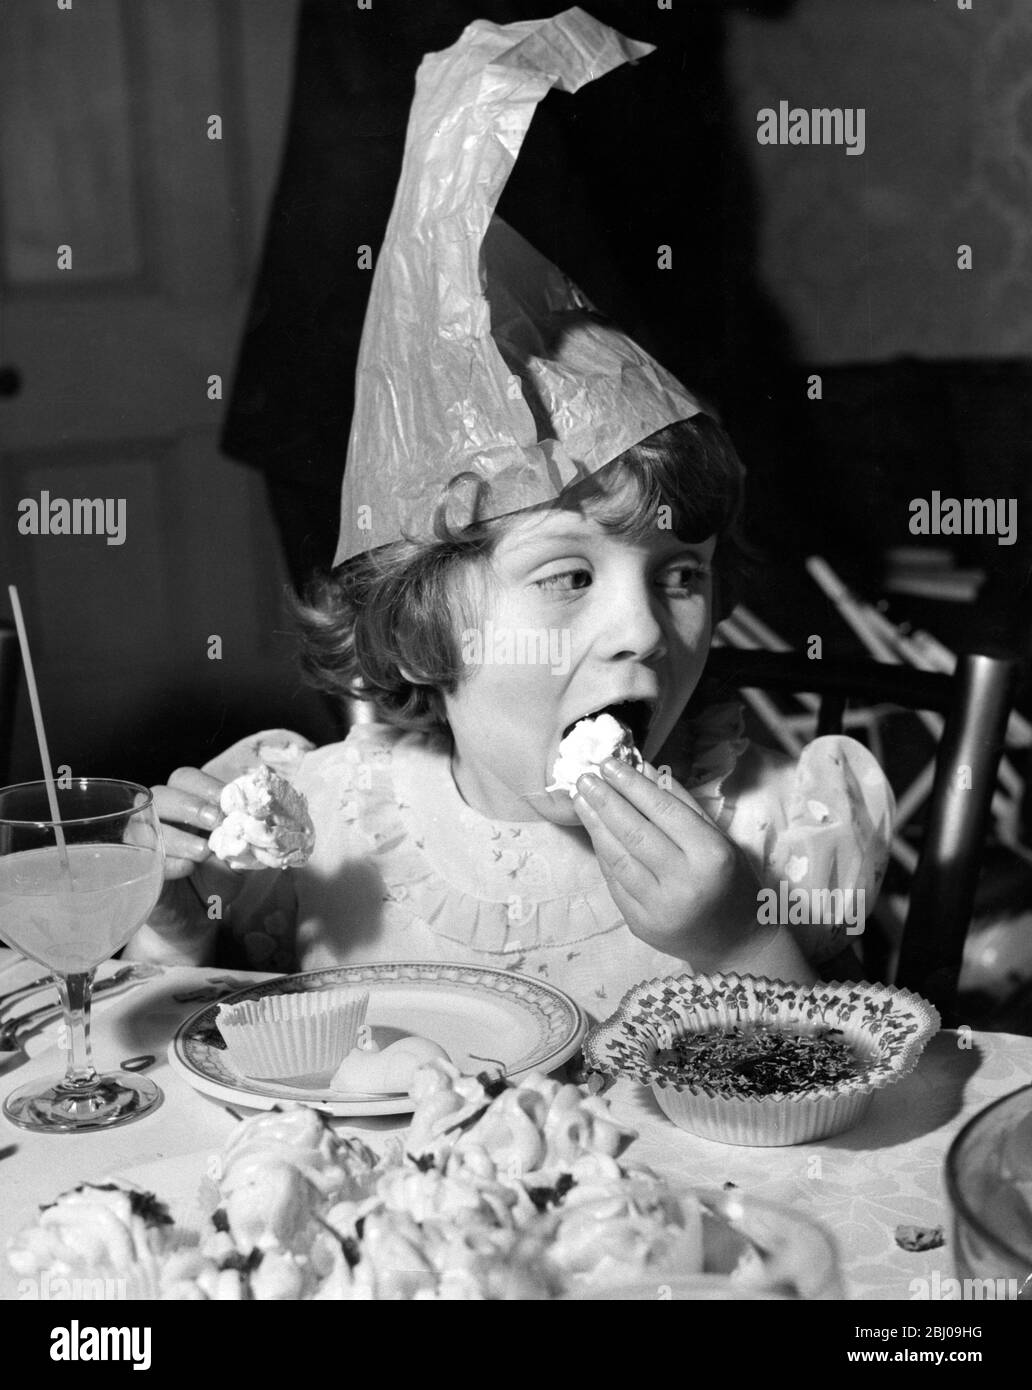 La Anphlett , 6 anni , mangia una tazza di torta al Variety Club Christmas Party per bambini al St. Agnes Orphanage, Thames Ditton. 15 Ennismore Gardens, Londra SW7, Inghilterra - 19 dicembre 1959 Foto Stock